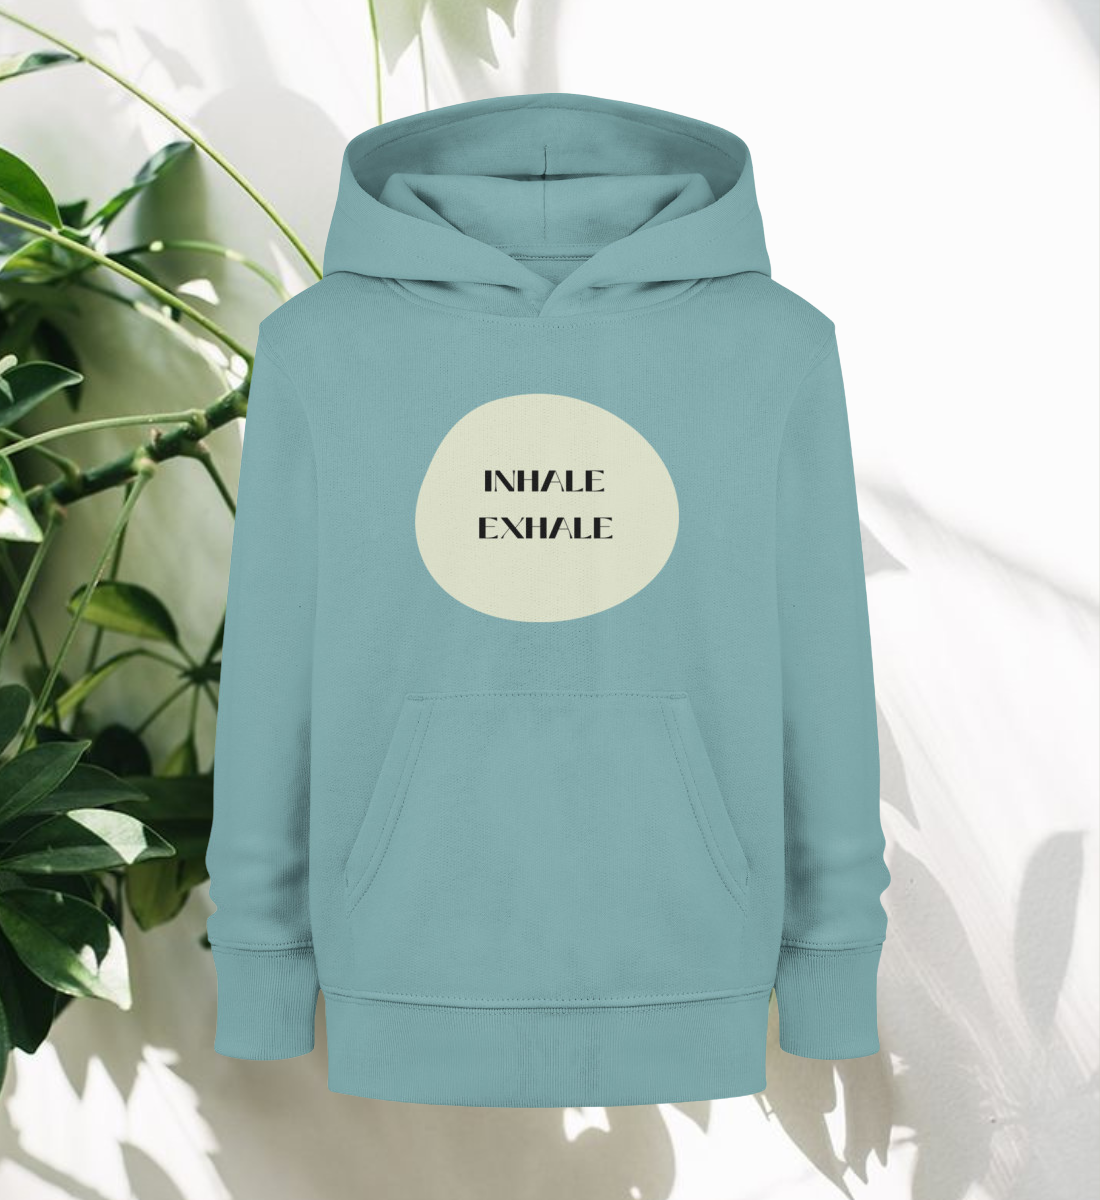 inhale exhale l kinder hoodie bio-baumwolle türkis l yoga pullover l yoga klamotten l vegane kleidung aus naturtextilien